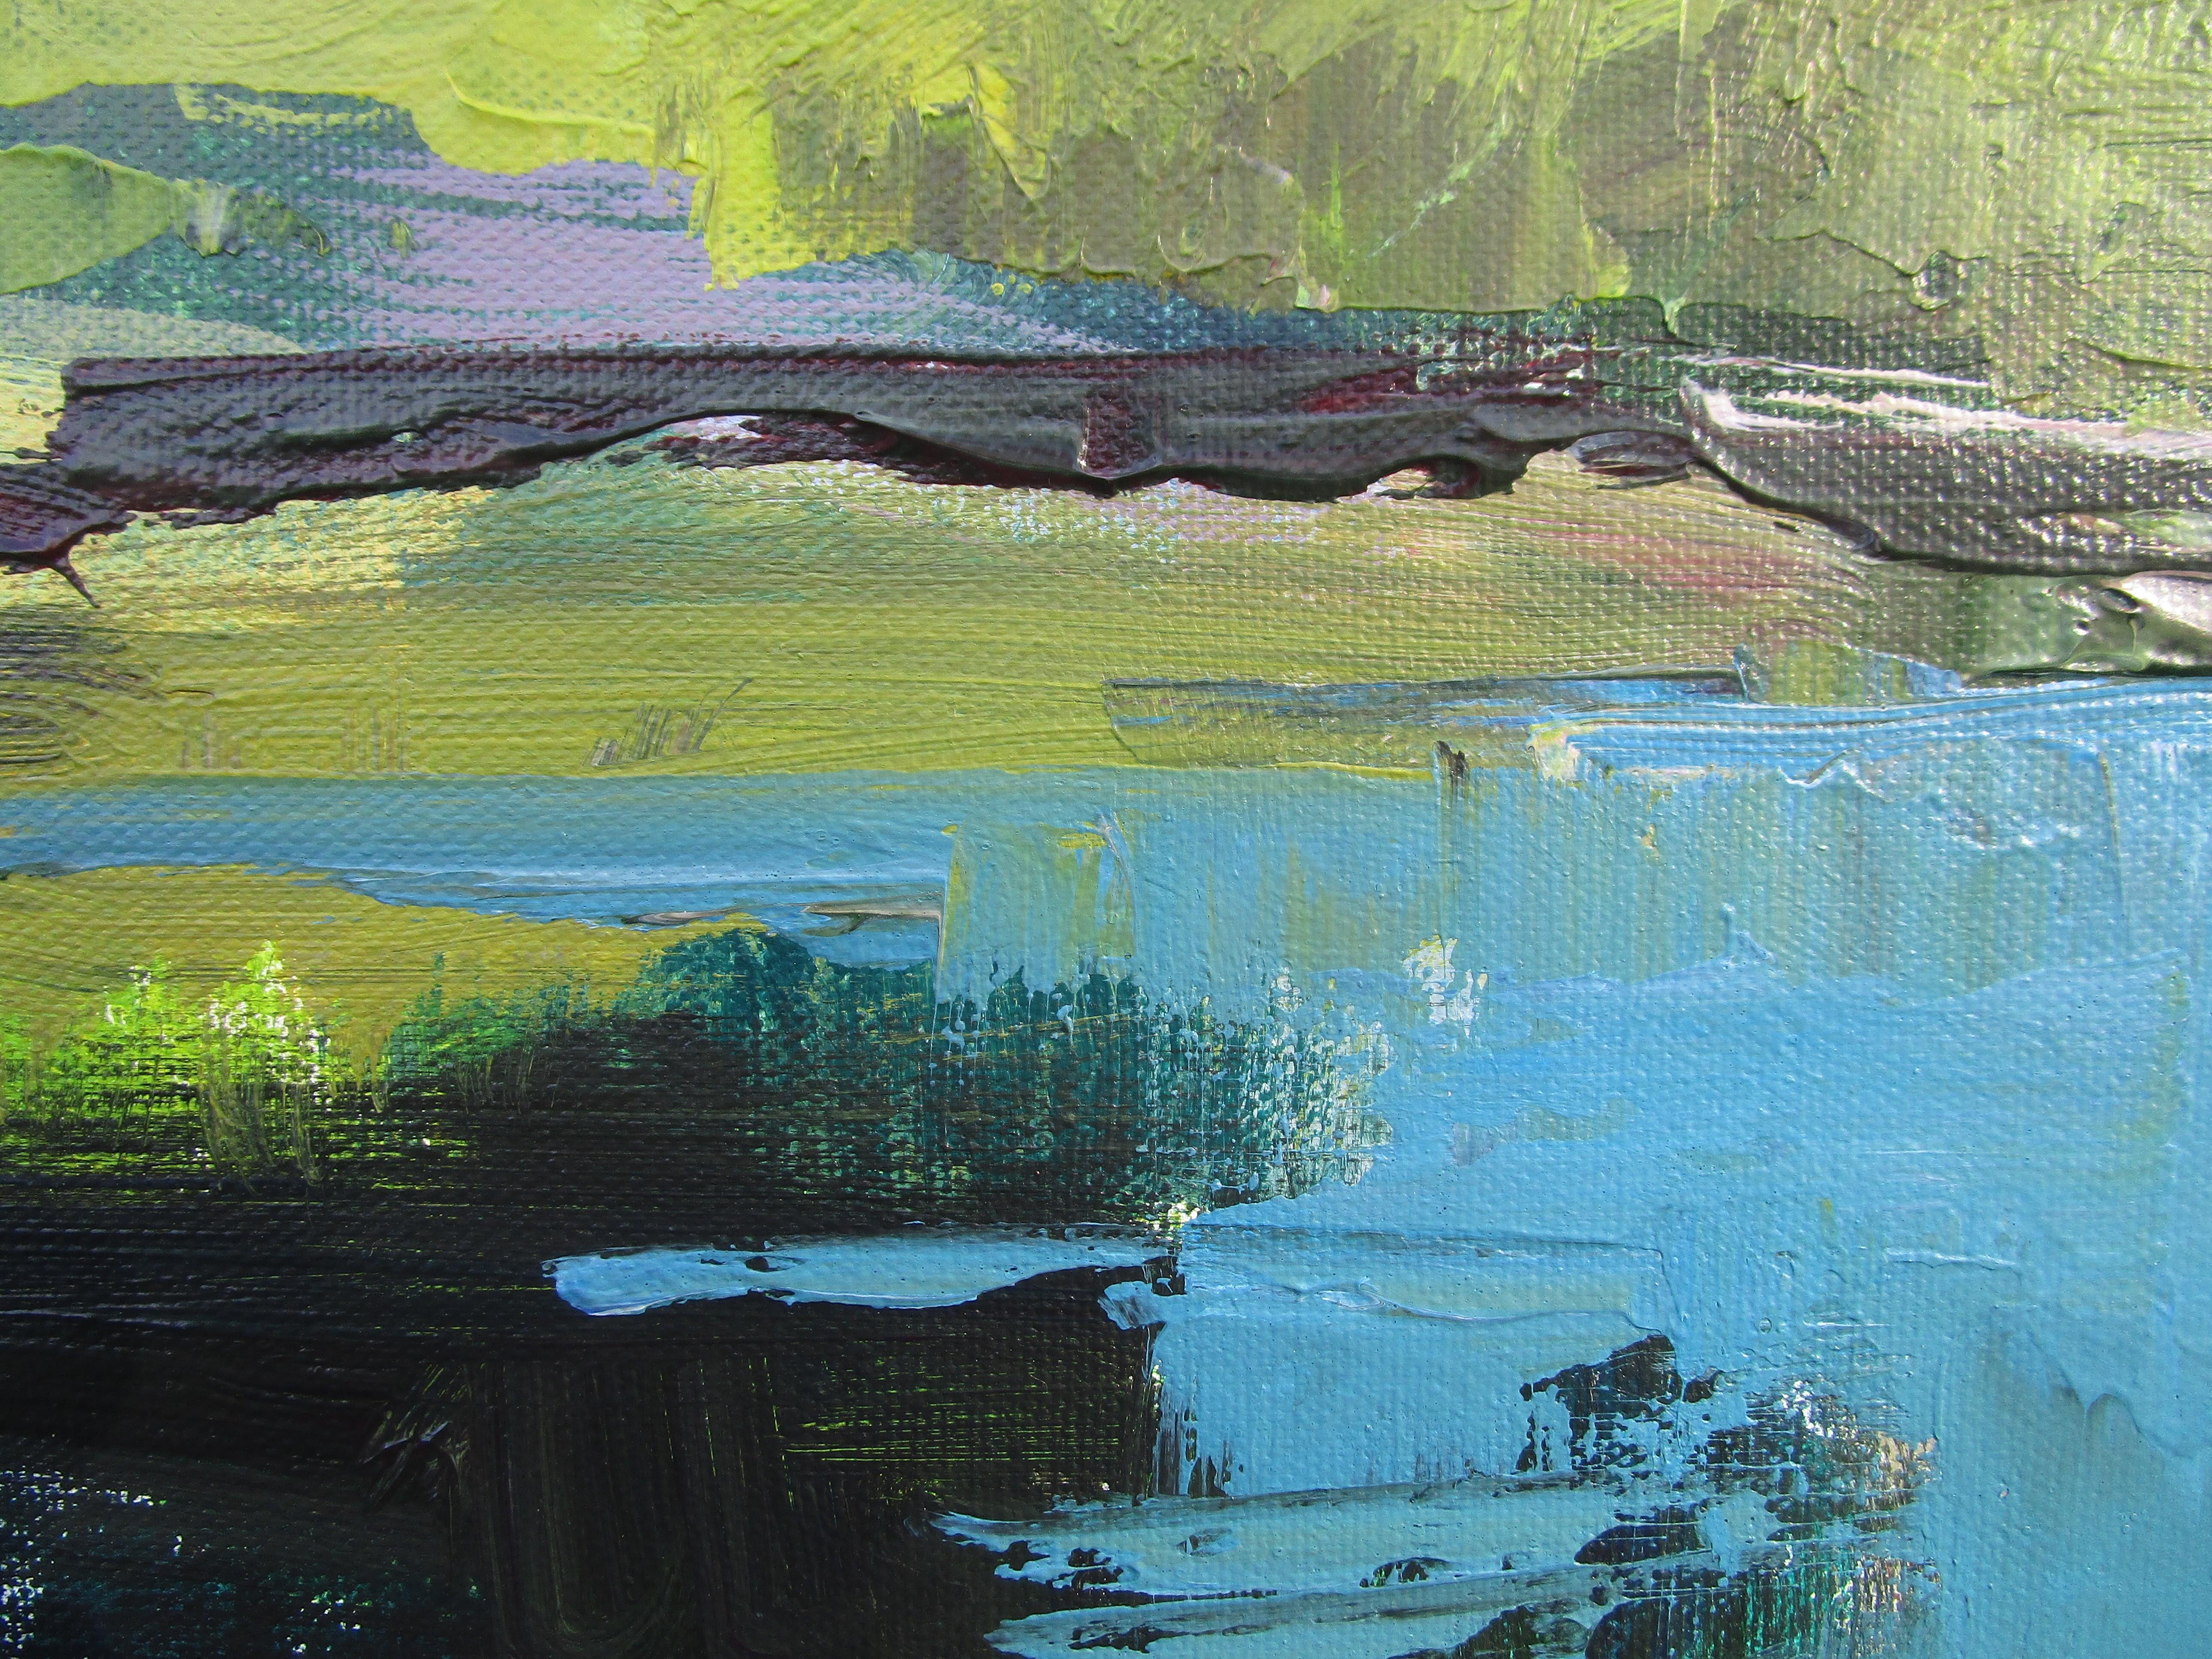 <p>Kommentare des Künstlers<br>Das Gemälde zeigt einen ruhigen Teich inmitten üppigen Grüns. Mit seinen ausdrucksstarken Pinselstrichen vermittelt das Werk Bewegung und einen kühnen Kontrast von Komplementärfarben, was den visuellen Reiz erhöht. Der